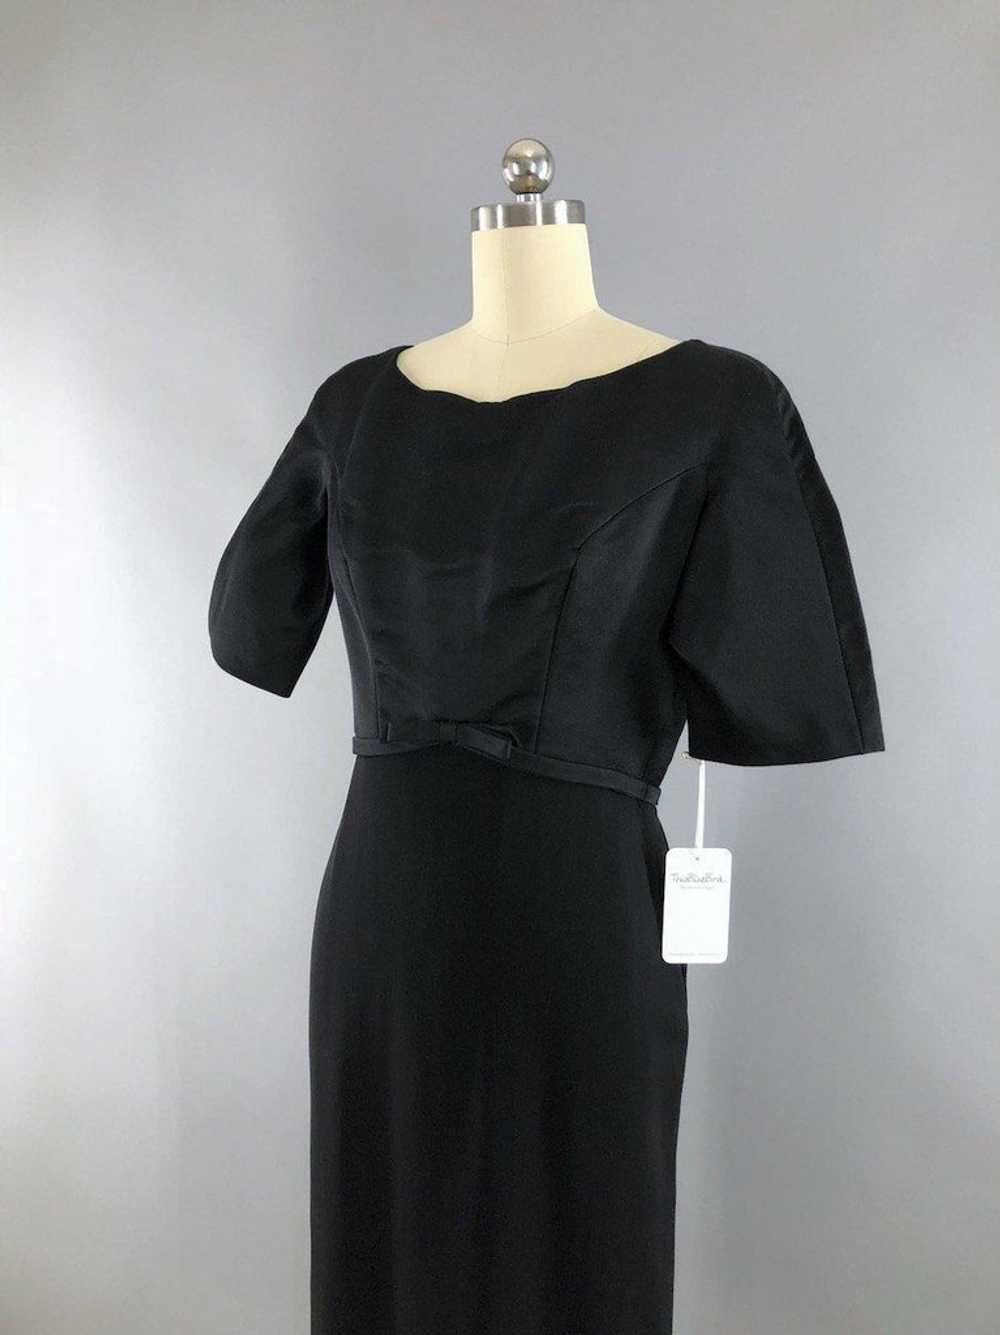 Vintage Black Satin Crepe Cocktail Dress - image 2